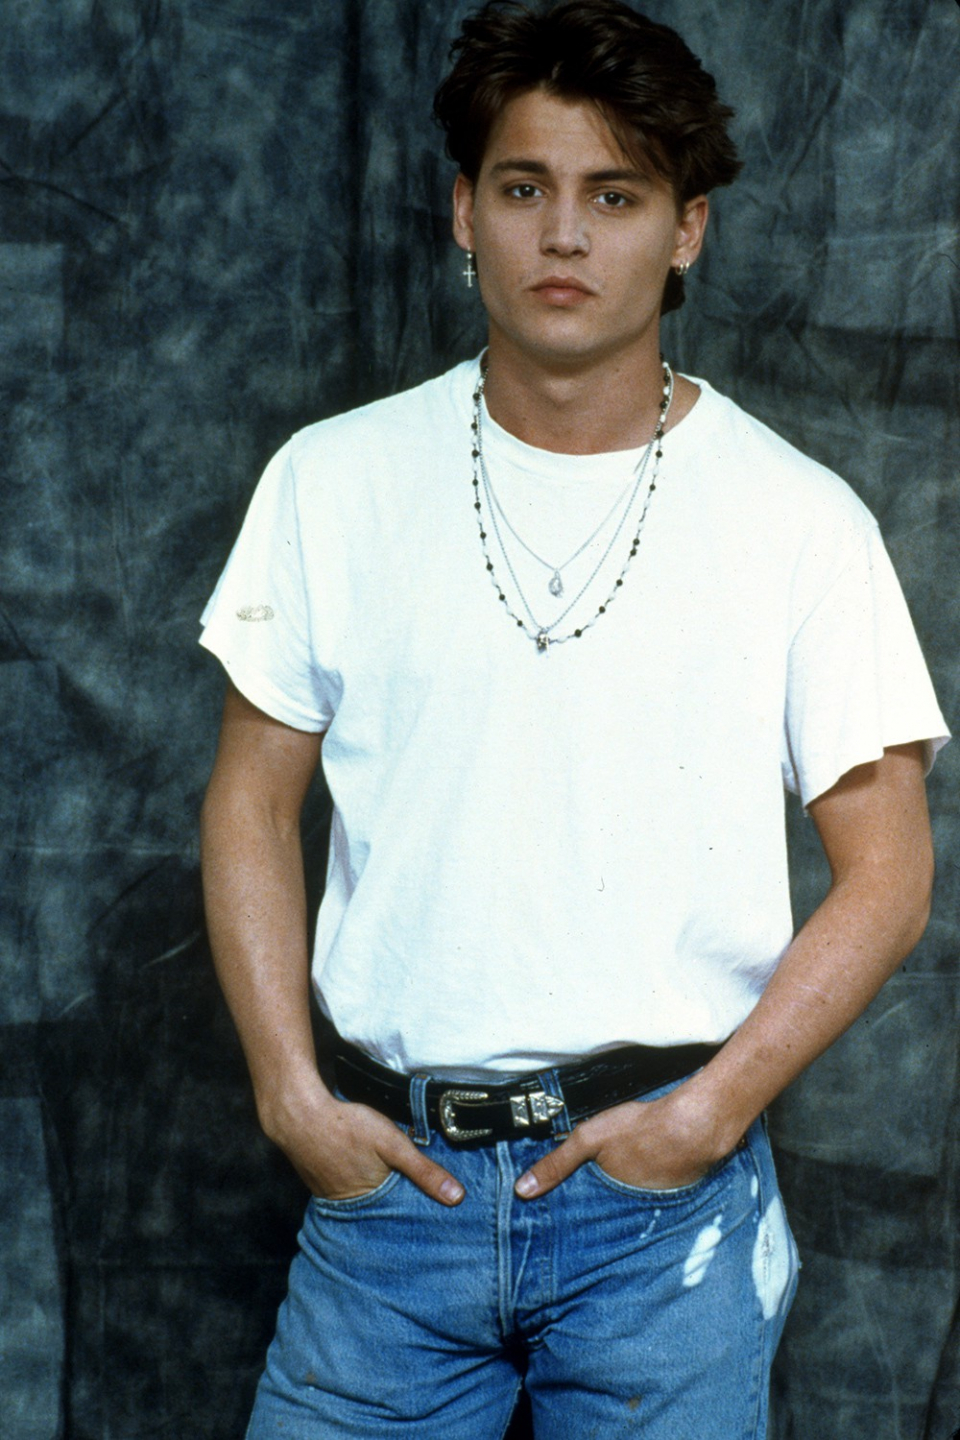 Johnny Depp sinh năm 1963, anh được biết đến nhiều qua vai diễn cướp biển vùng Ca-ri-bê. Những năm đầu bắt đầu sự nghiệp, Johnny Depp nhận được nhiều lời khen ngợi về khả năng diễn xuất. Với gương mặt góc cạnh nam tính đặc biệt, Depp thường được các đạo diễn lựa chọn vào các vai cá tính và hơi dị.